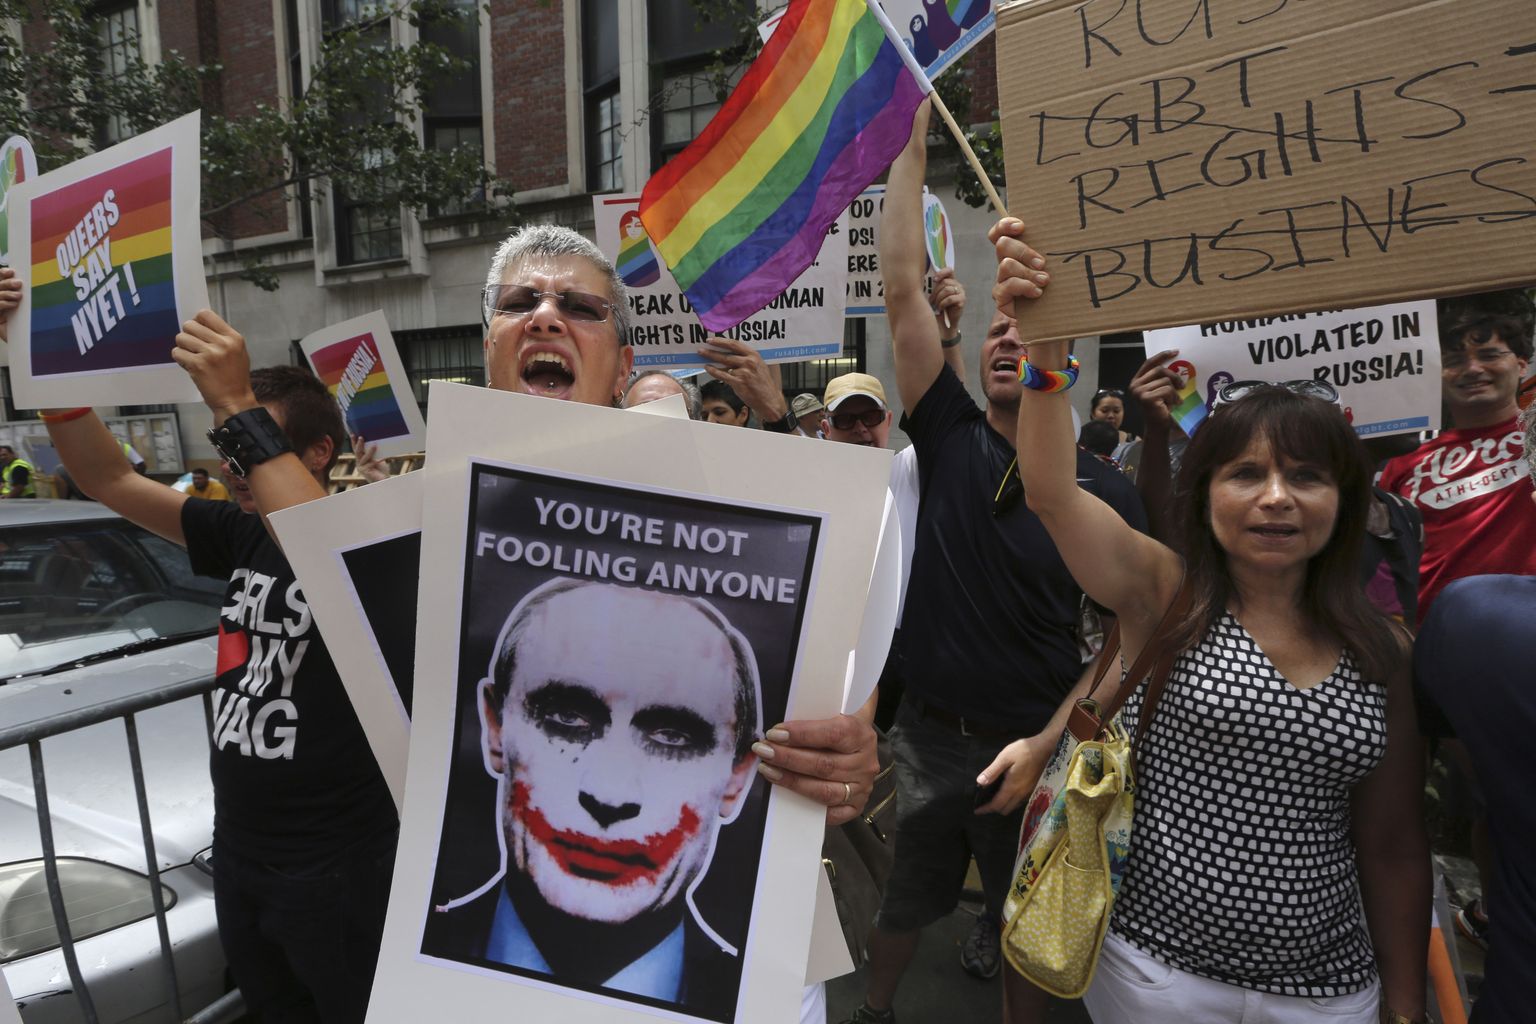 Гей-активисты митингуют у консульства РФ в Нью-Йорке, протестуя против антигейского закона, принятого в России.